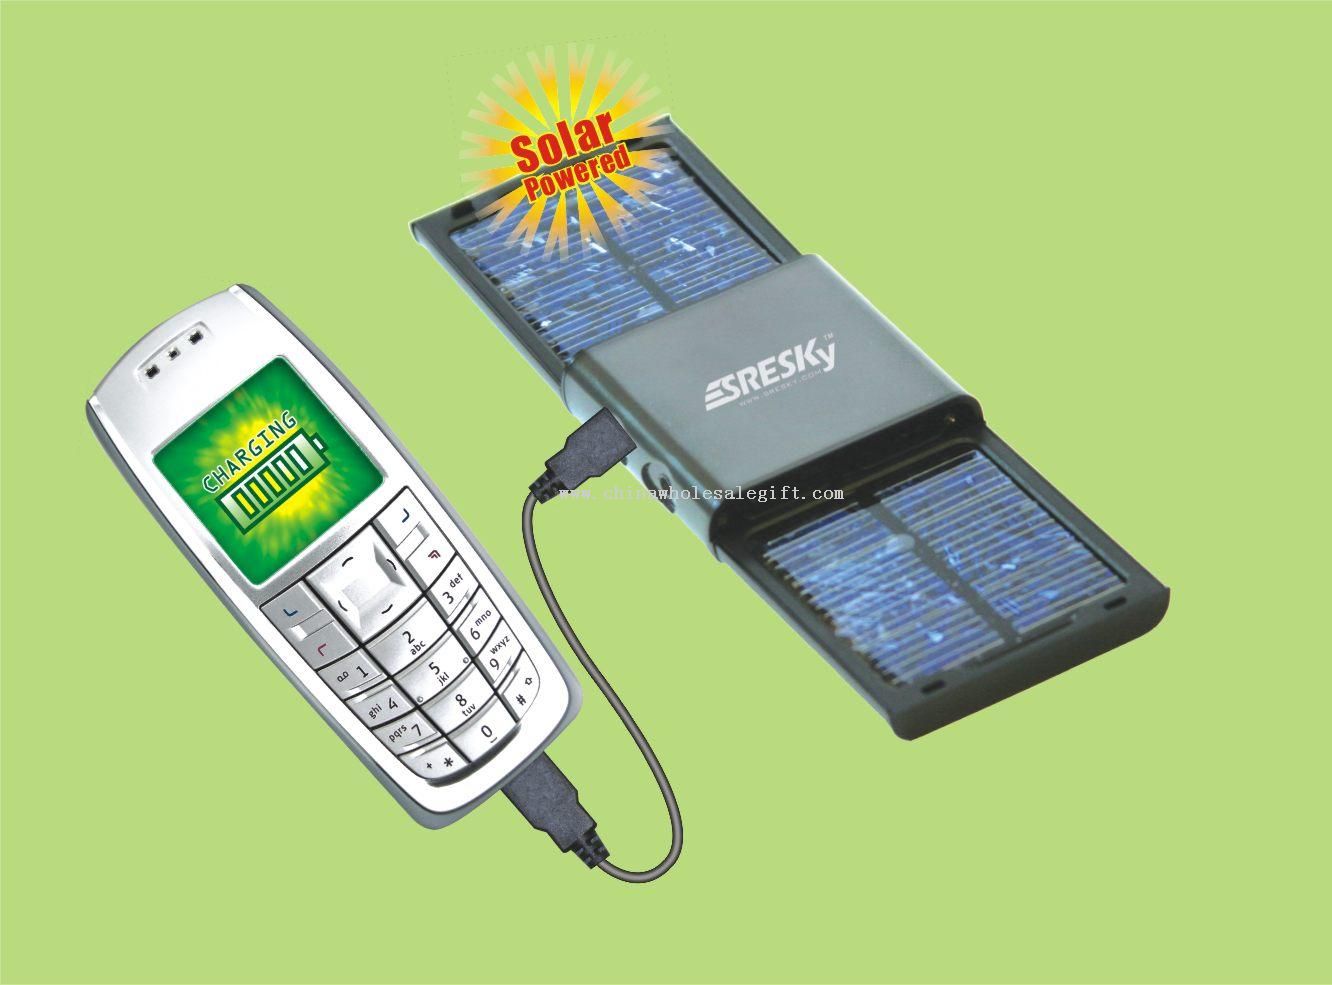 Telefon komórkowy z ładowarką baterii słonecznych